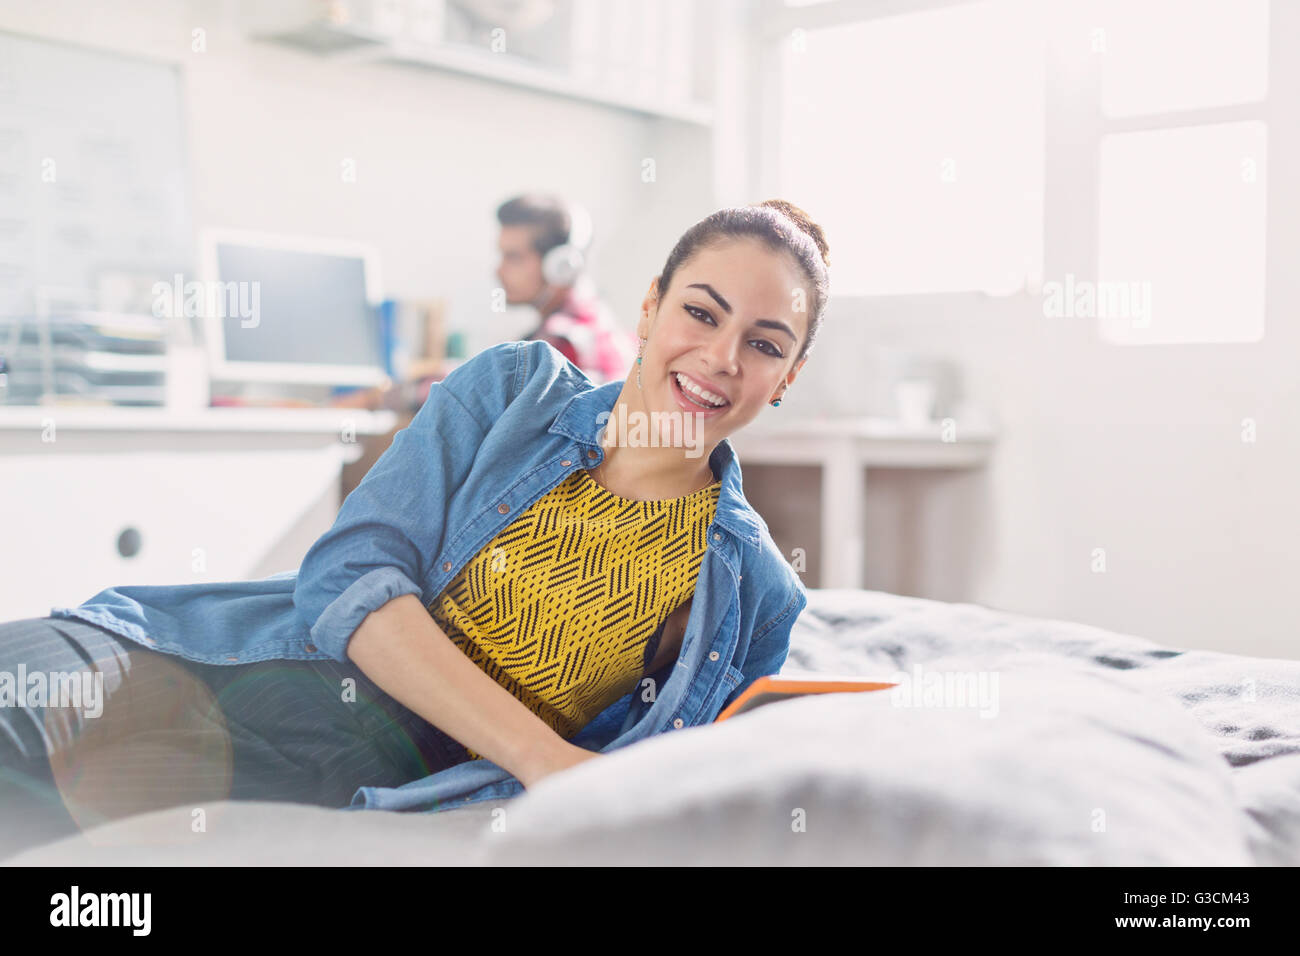 Retrato sonriente joven mujer adulta leyendo en la cama Foto de stock